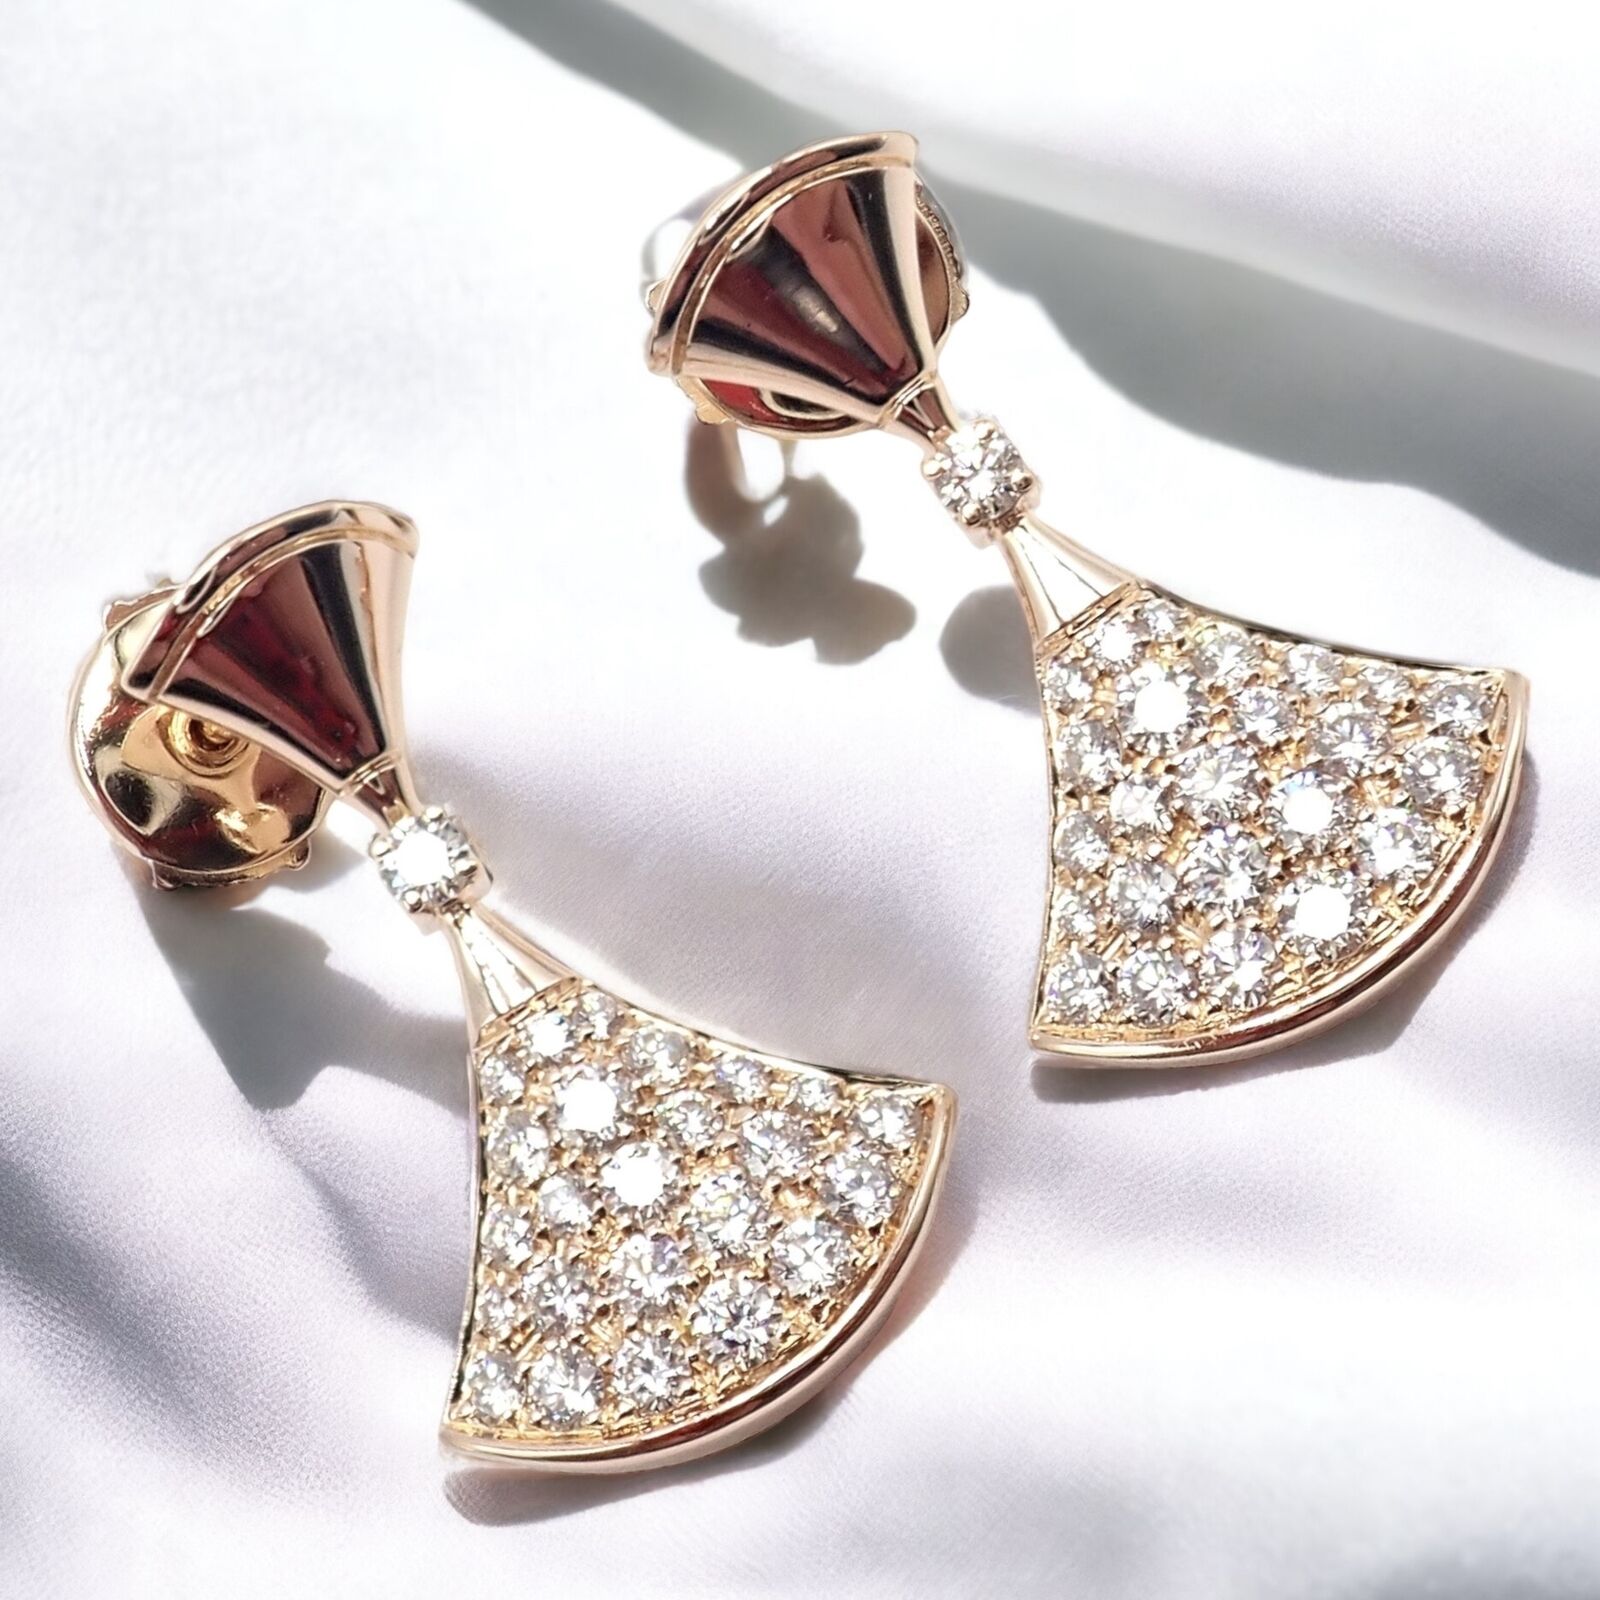 Bvlgari Jewelry & Watches:Fine Jewelry:Earrings Authentic! Bulgari Bvlgari 18k Rose Gold Diamond Diva Dream Earrings